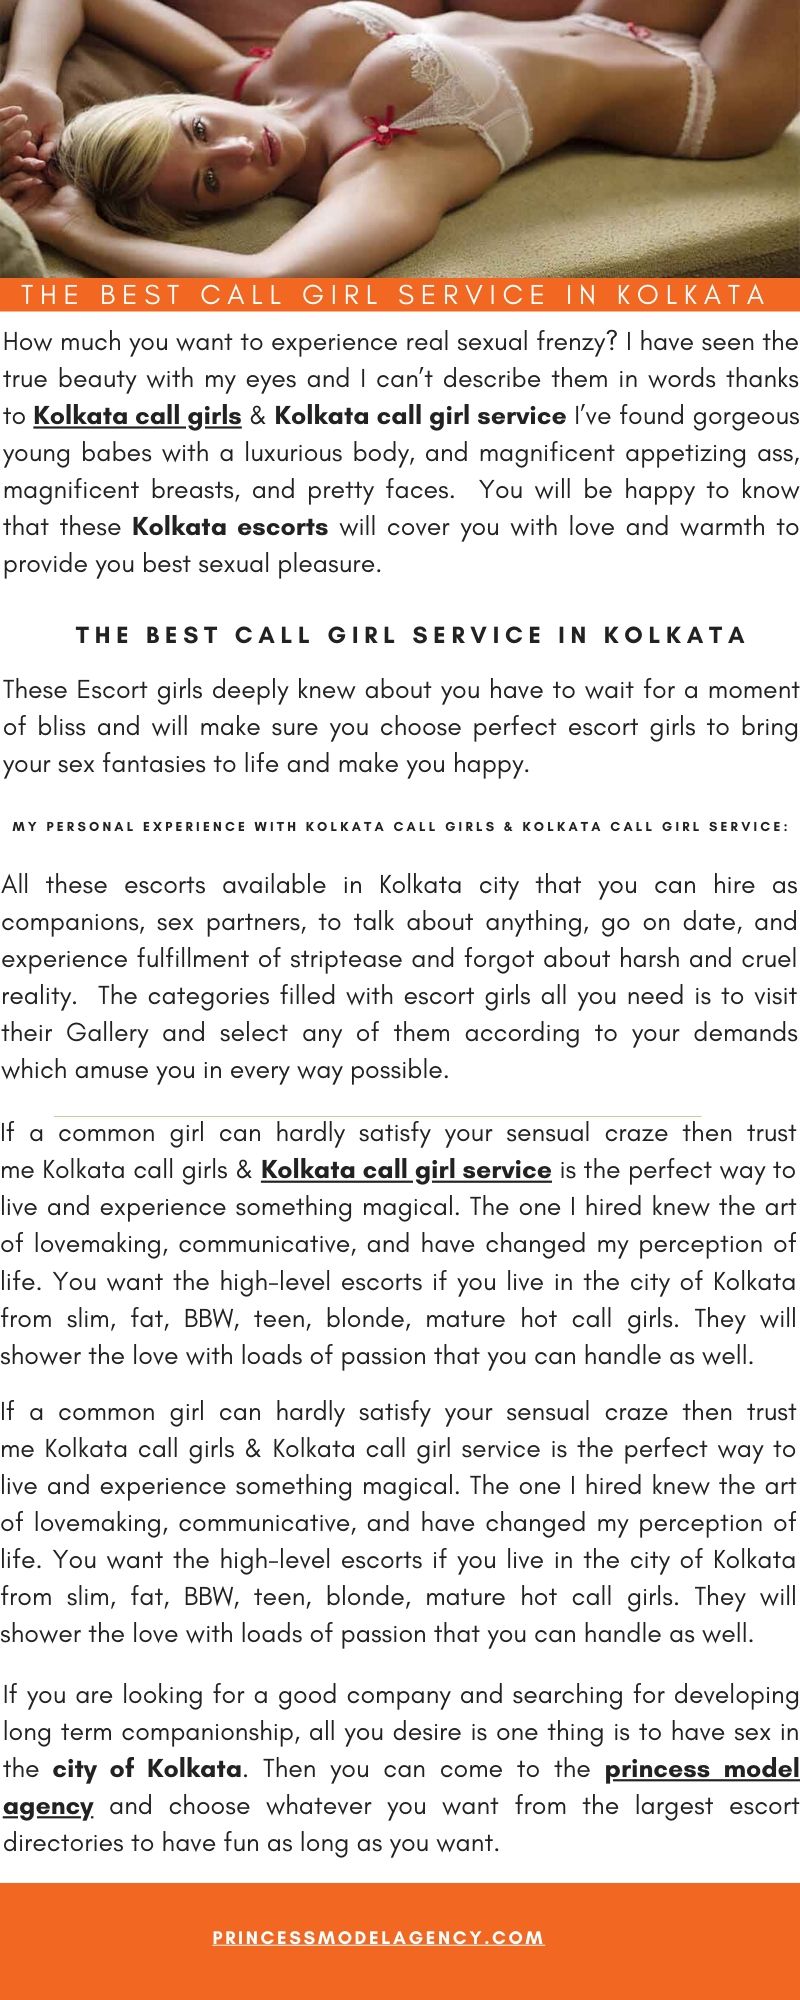 Princess Model Agency - The Best Call girl service in Kolkata